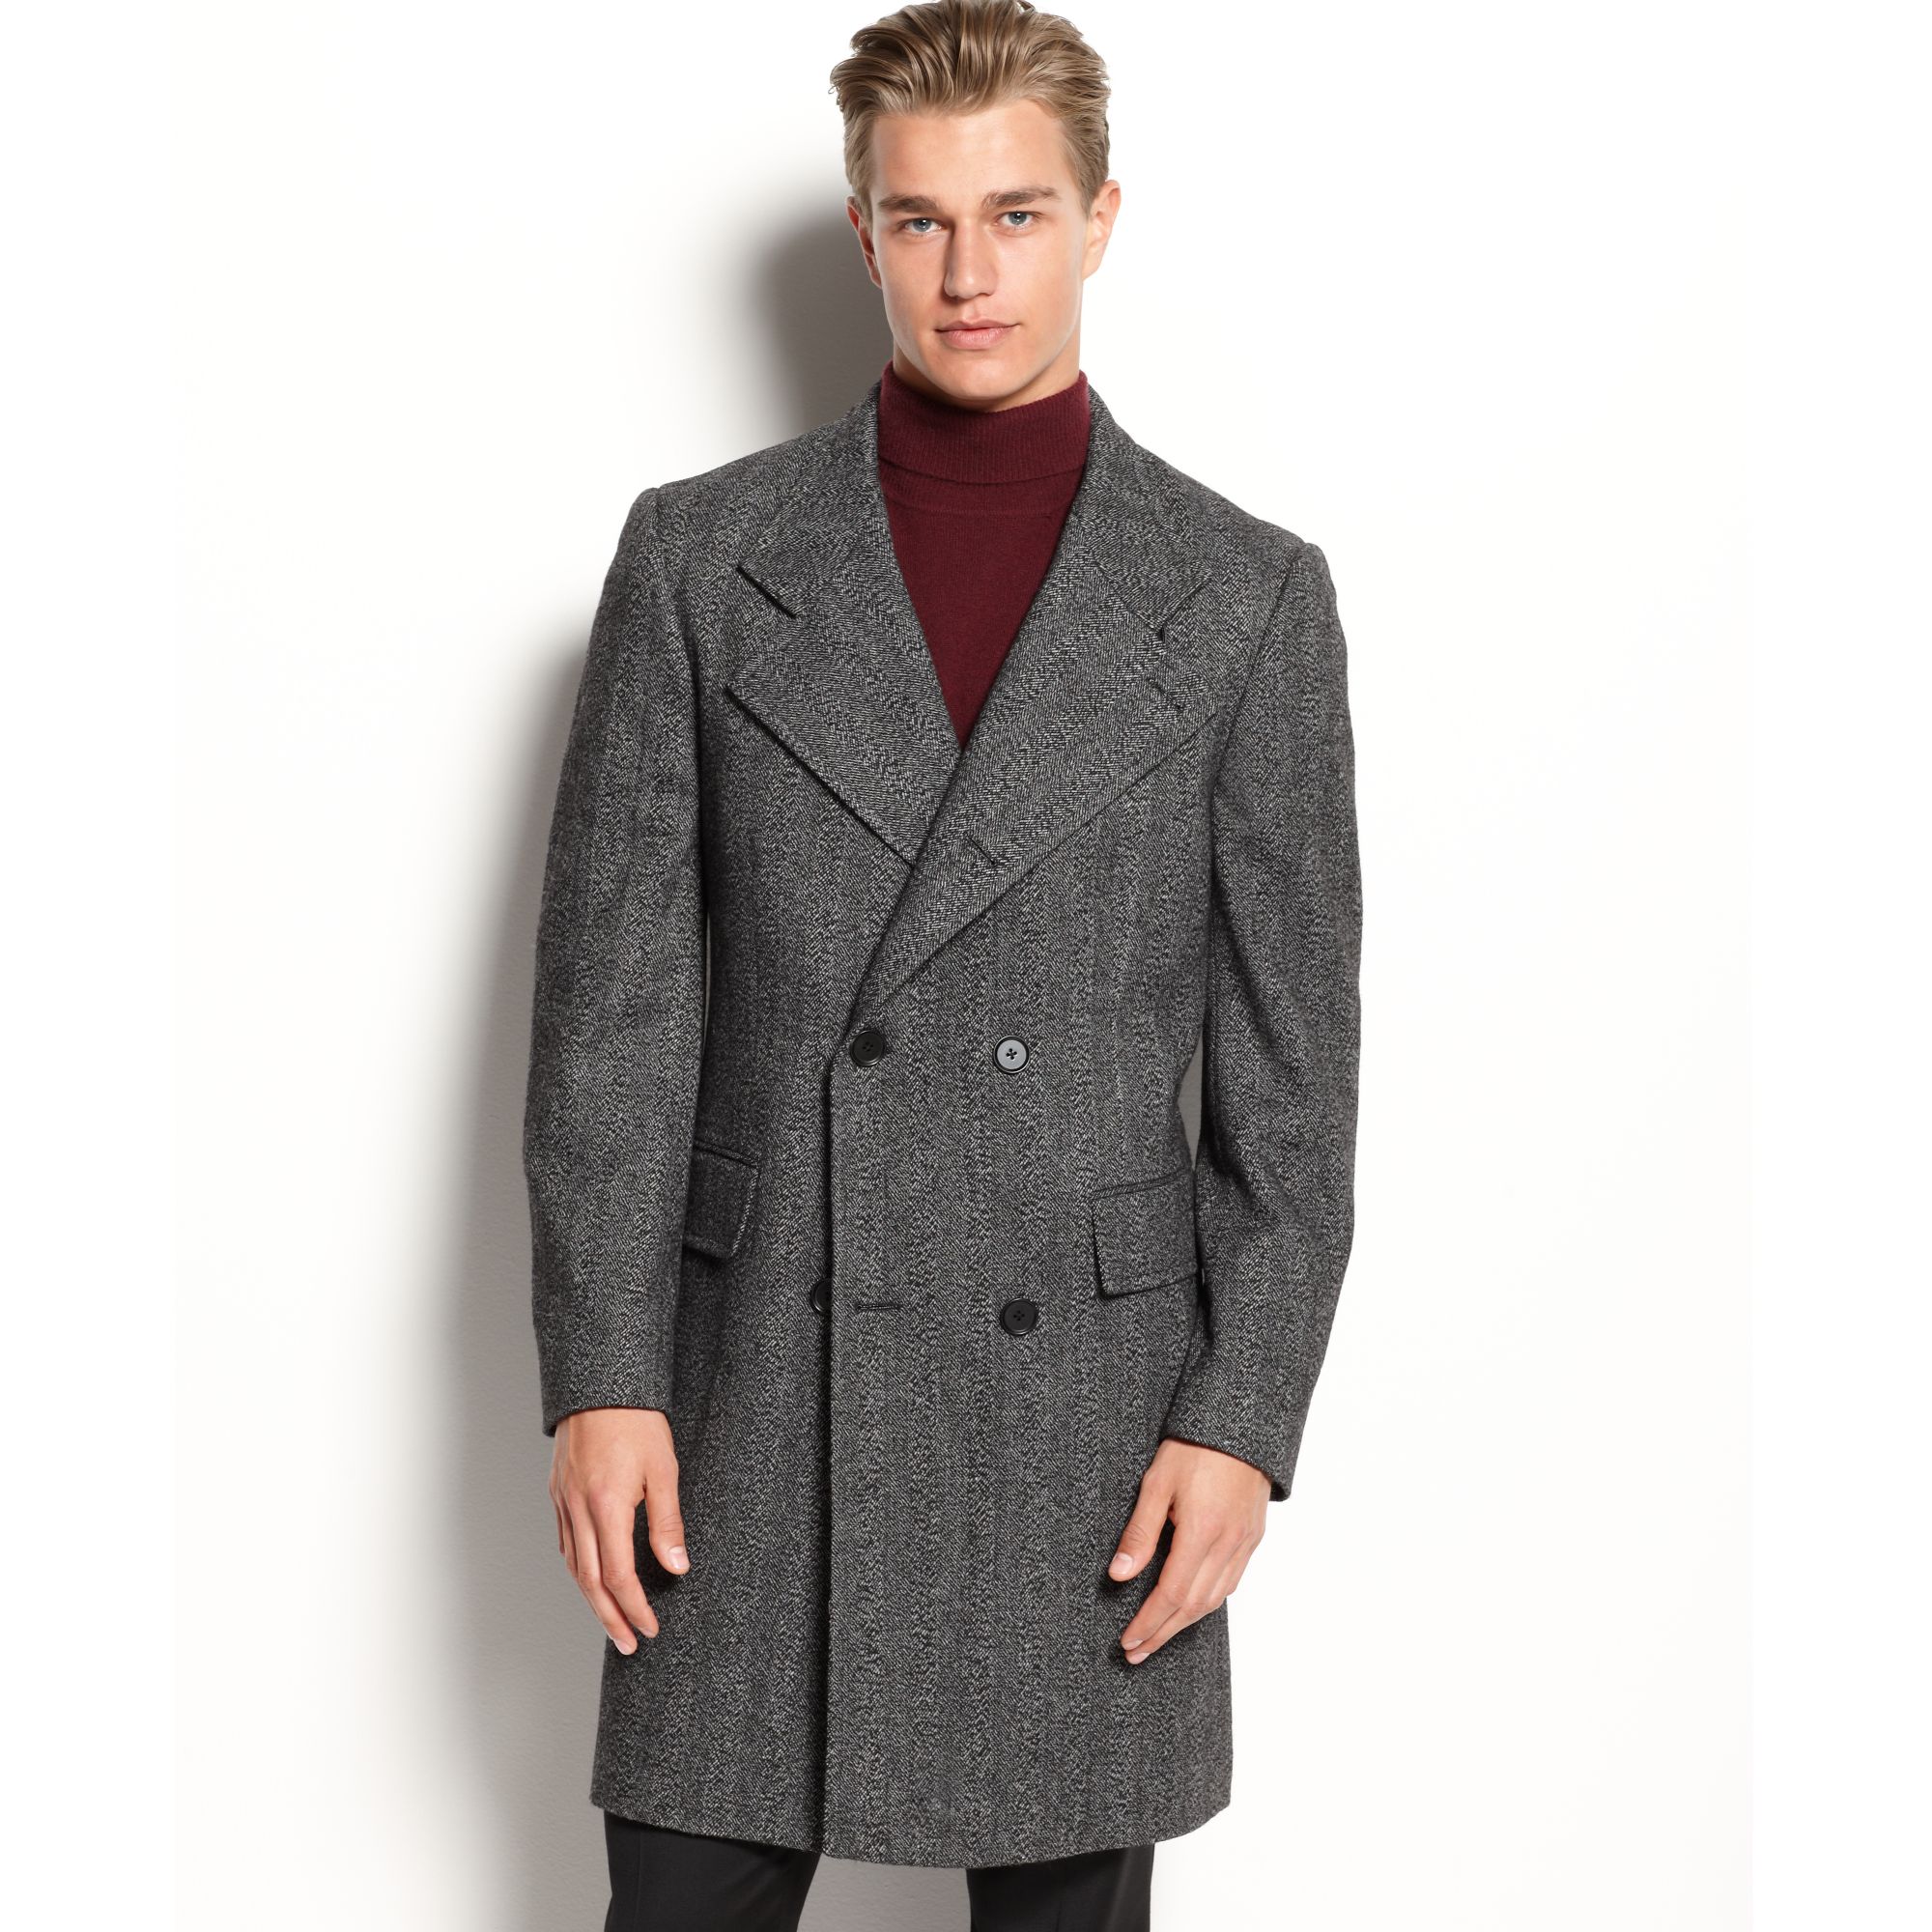 Мужское пальто озон. Wool Blend Coat пальто мужское\. Wool and Cashmere пальто мужское. Пальто 'Herringbone. Пальто шерстяное Кромби.